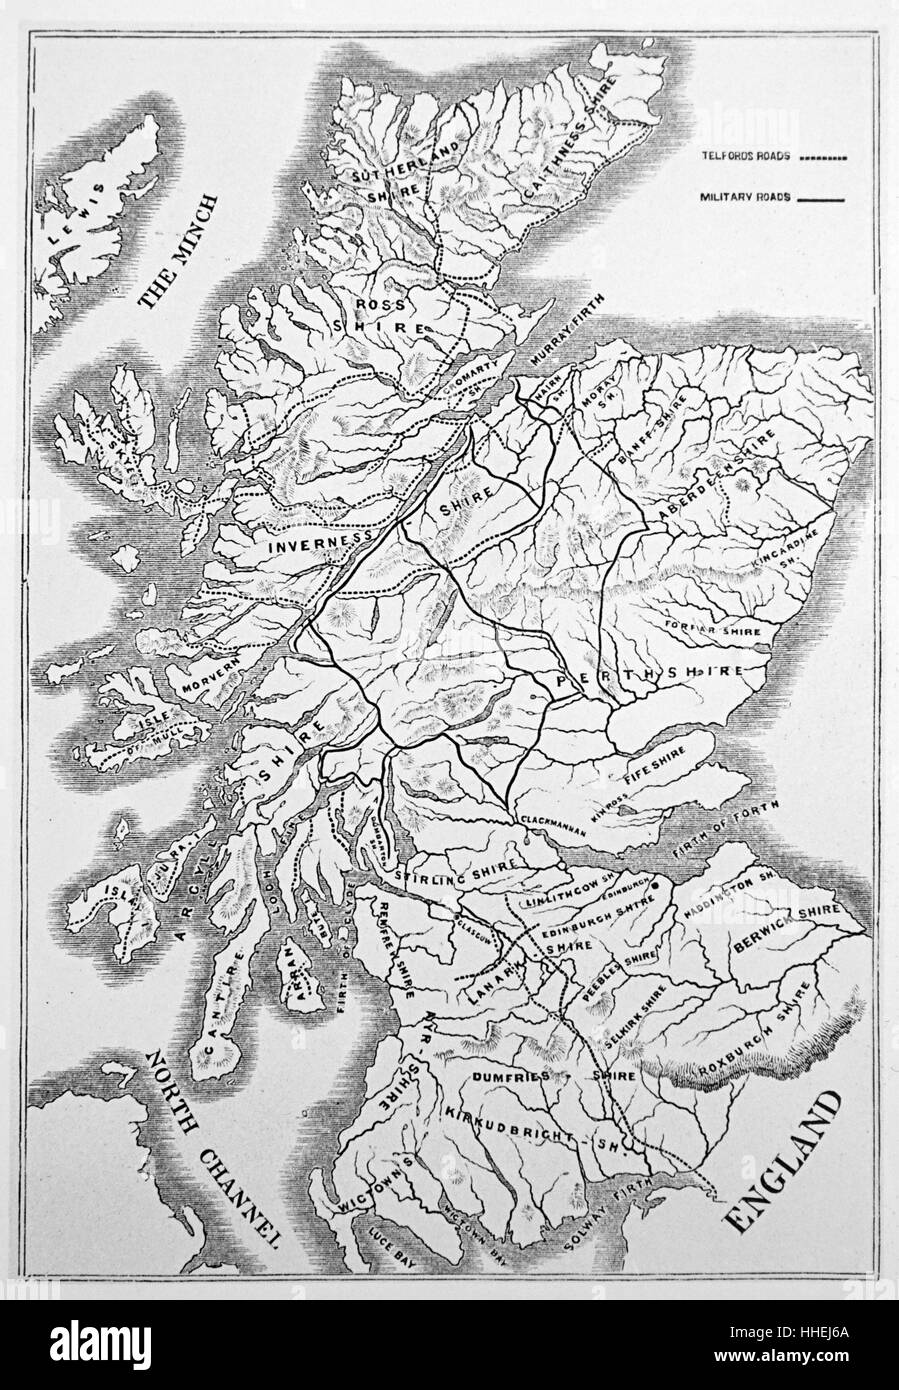 Karte von Schottland, Telford's Straßen (gestrichelte Linien) und militärische Straßen (durchgezogene Linien). Thomas Telford (1757-1834) ein schottischer Ingenieur, Architekt und Steinmetz. Vom 19. Jahrhundert Stockfoto